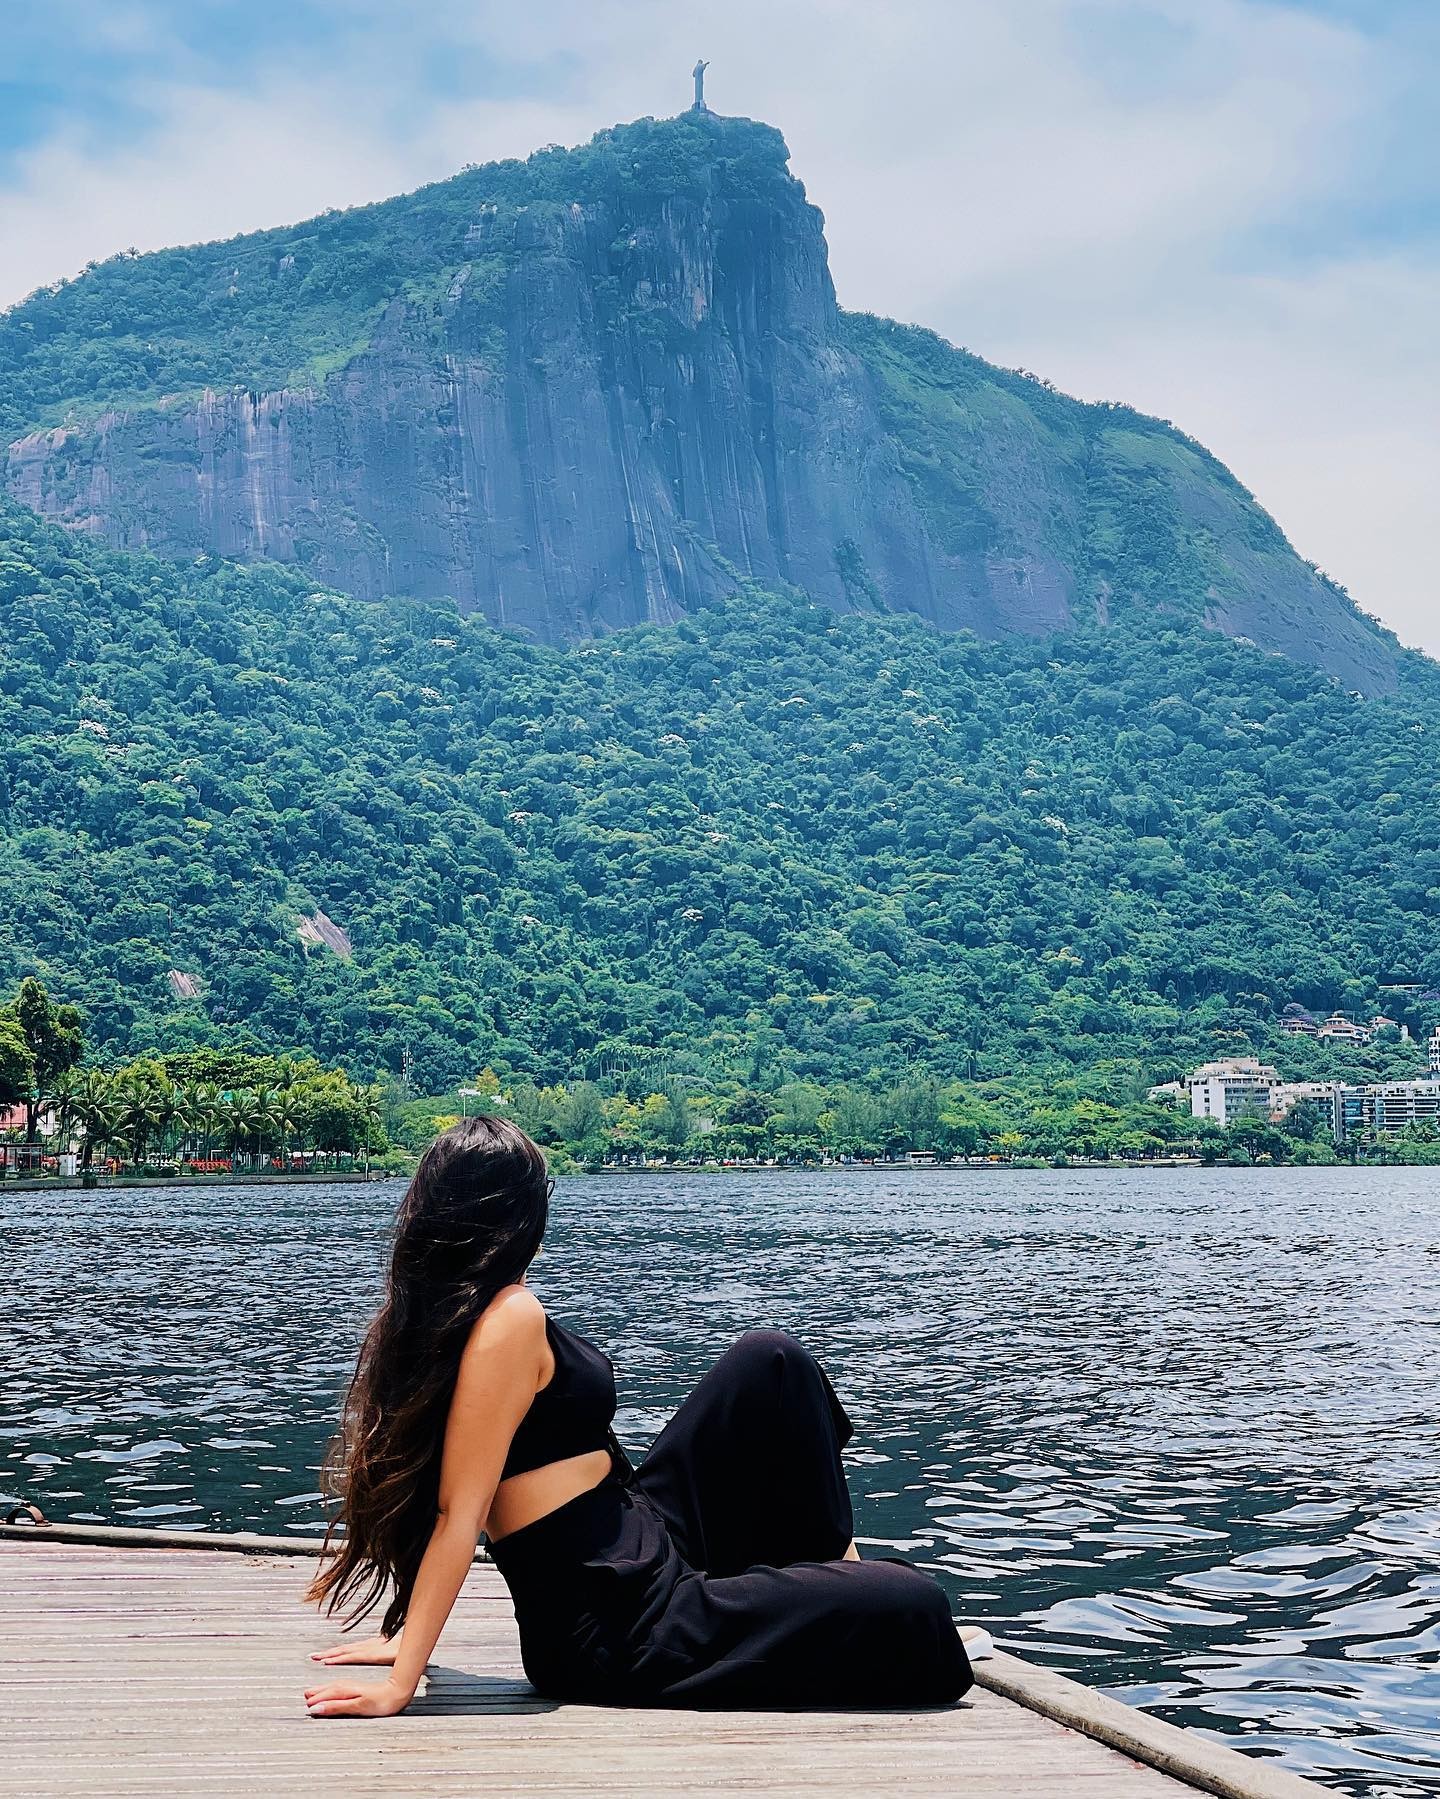 Juliette posa em paisagem paradisíaca e fala do amor pelo Rio de Janeiro (Foto: Reprodução / Instagram)